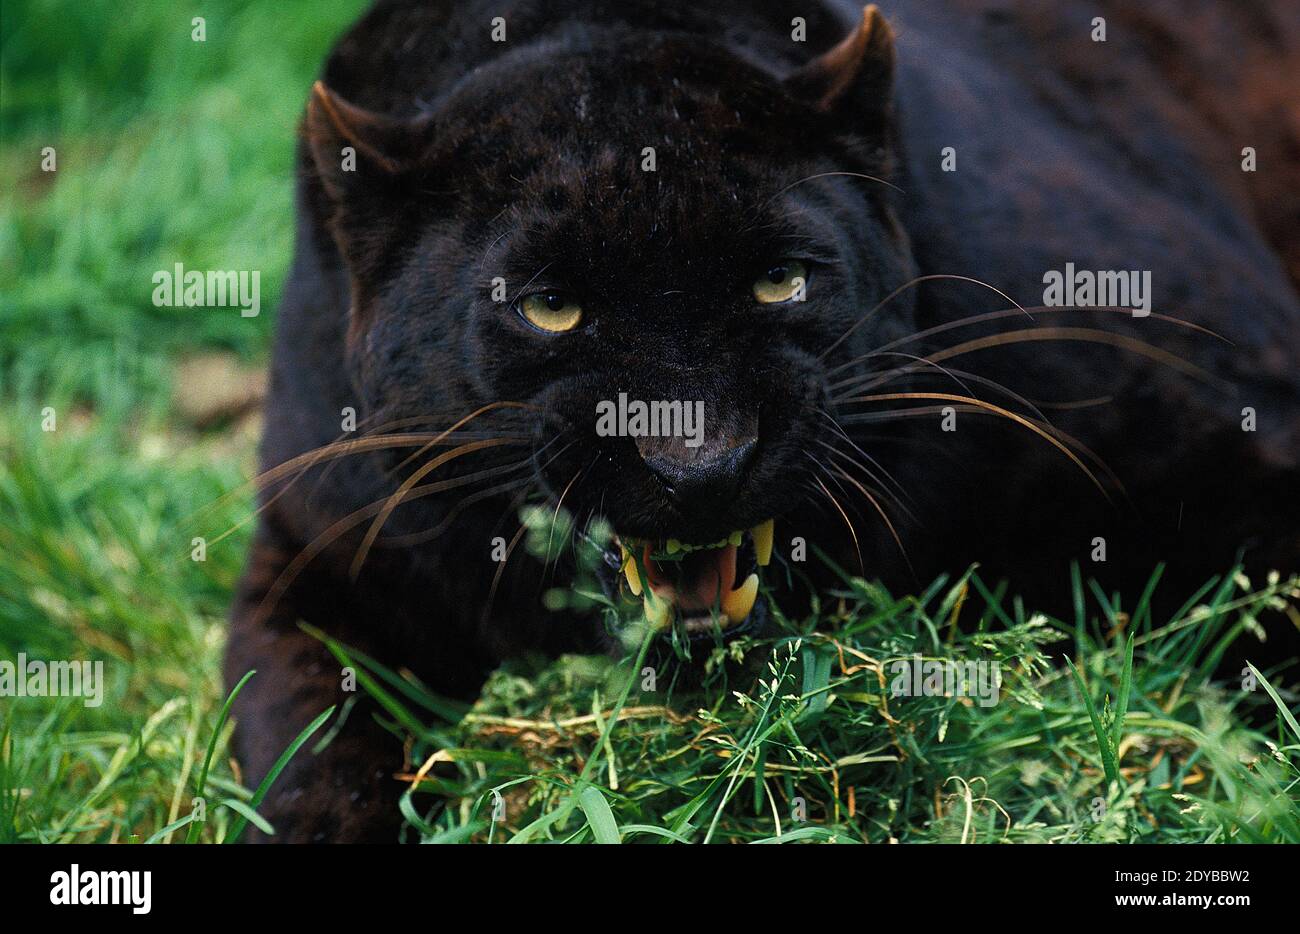 Black Panther, panthera pardus, Adult snarling Stock Photo